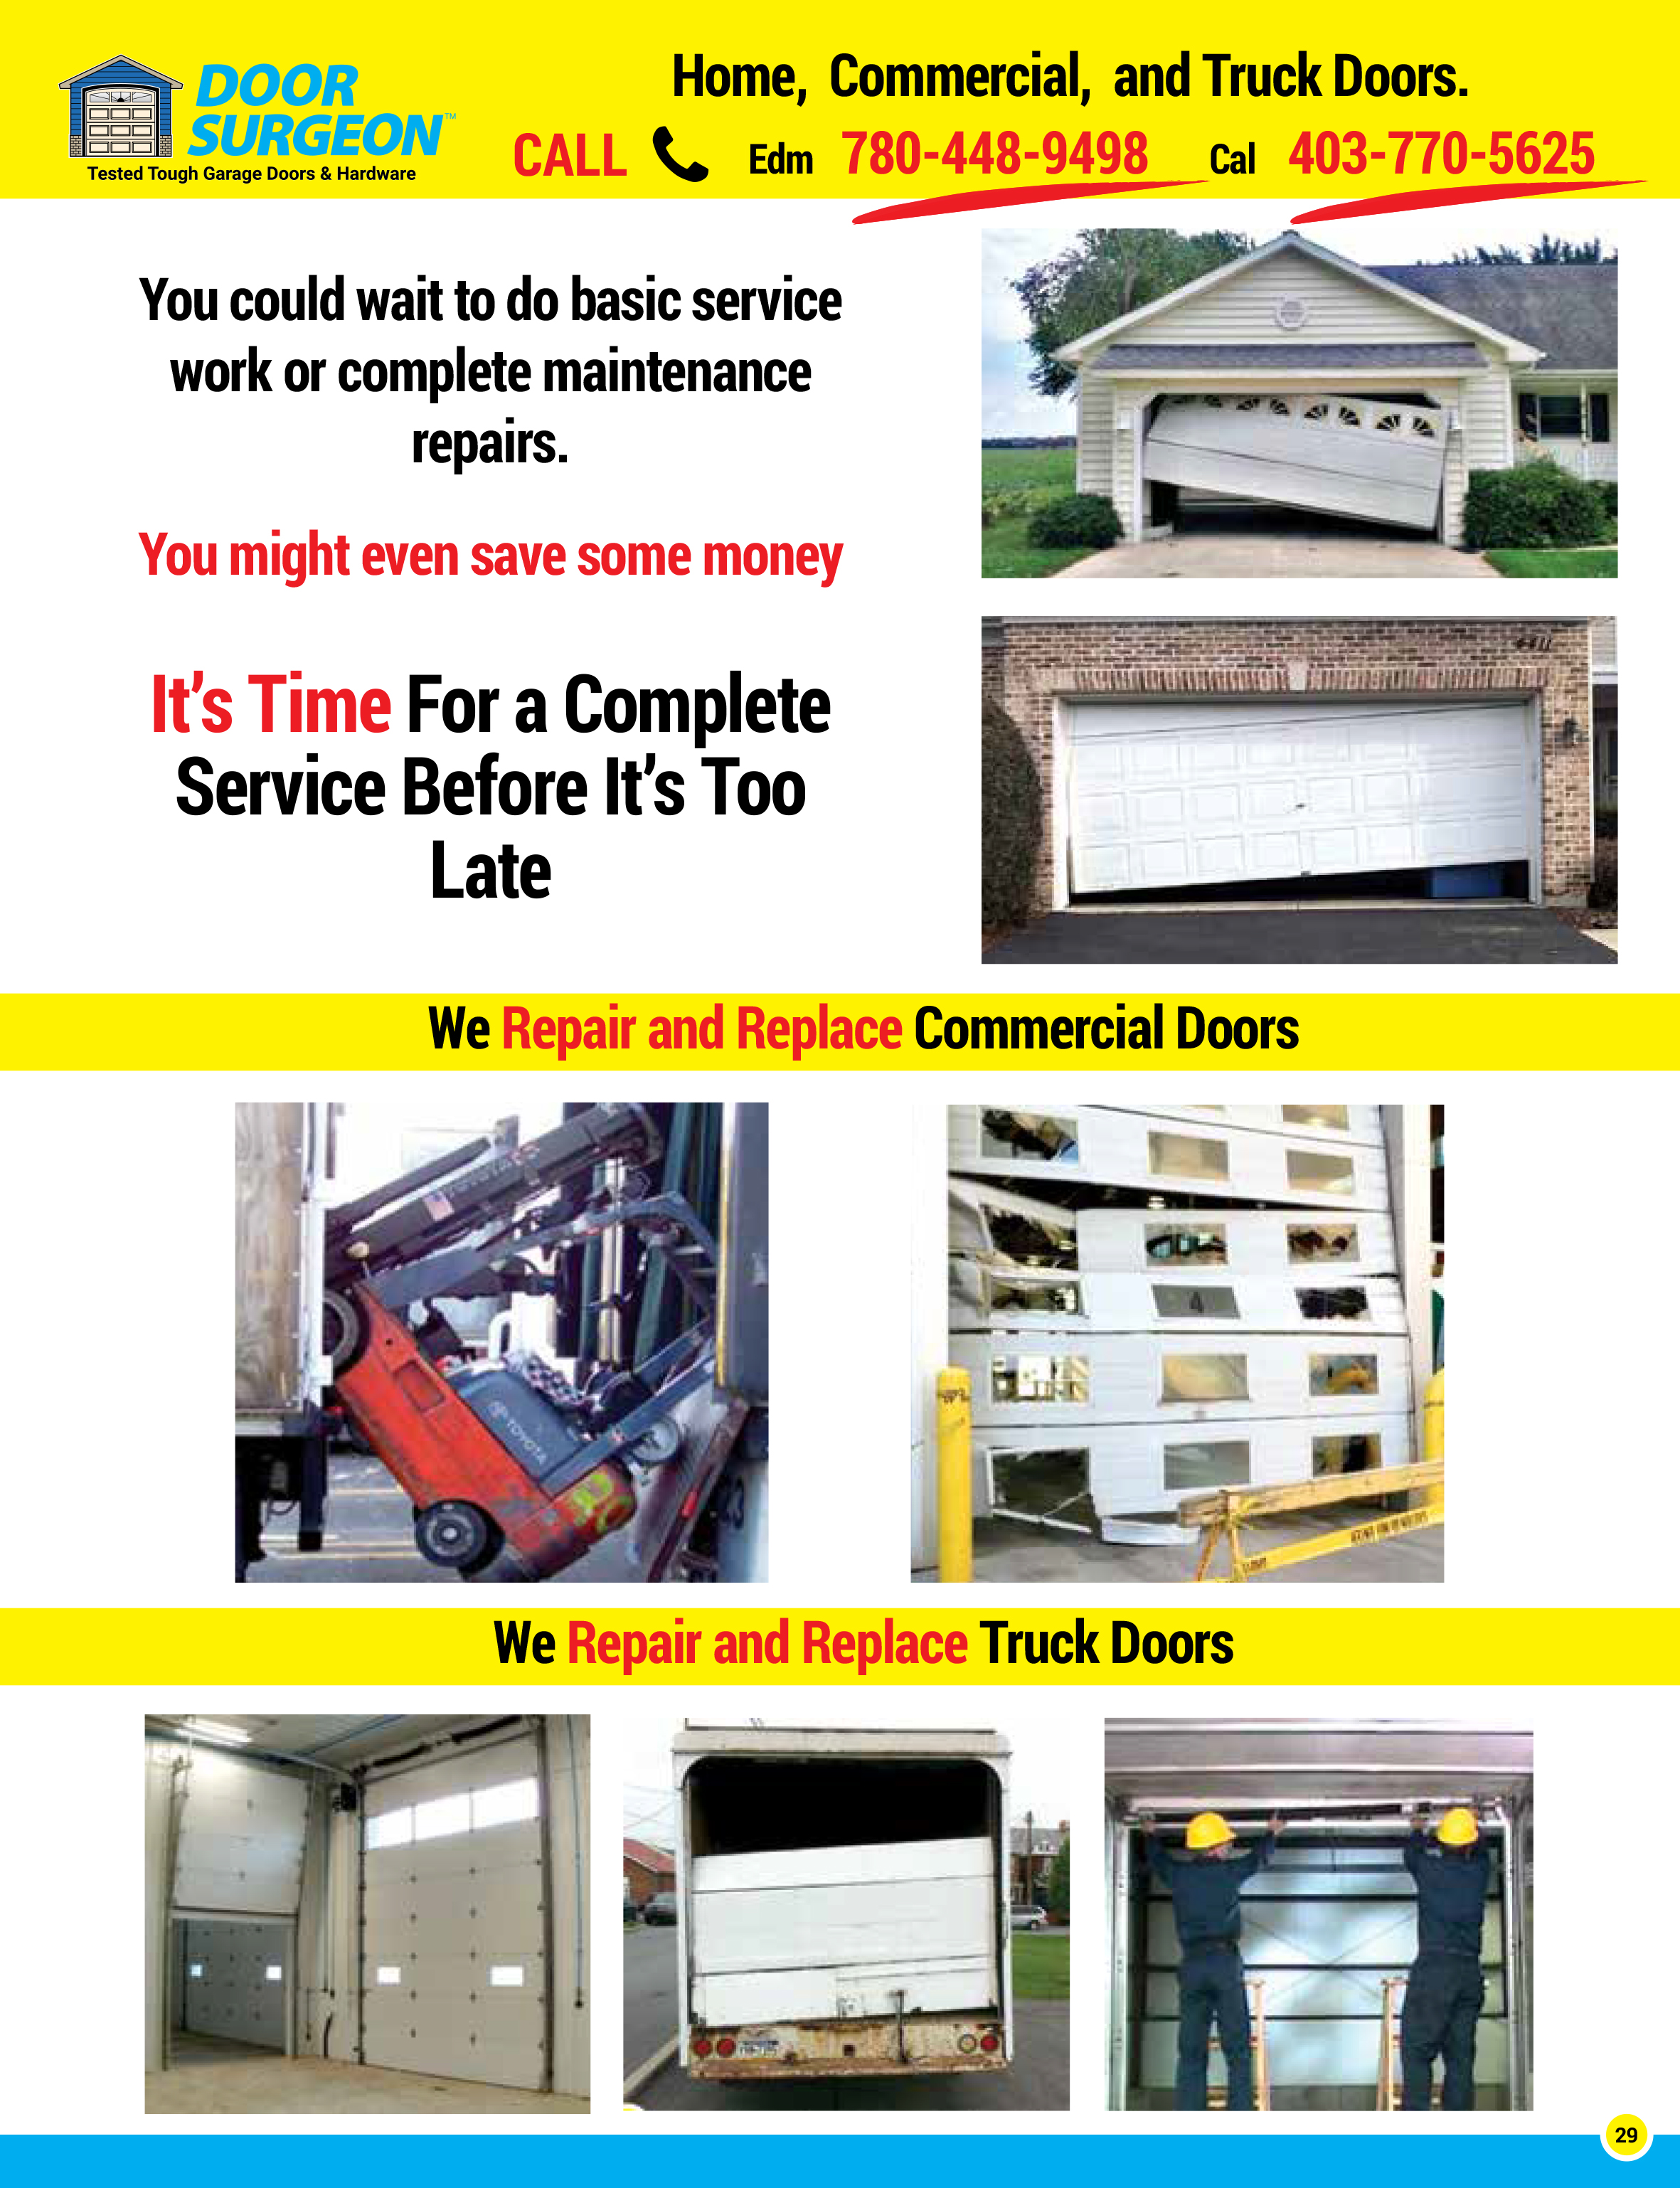 Garage door solutions for home, commercial, and trucks. Garage door repairs, replacement parts and new garage doors.